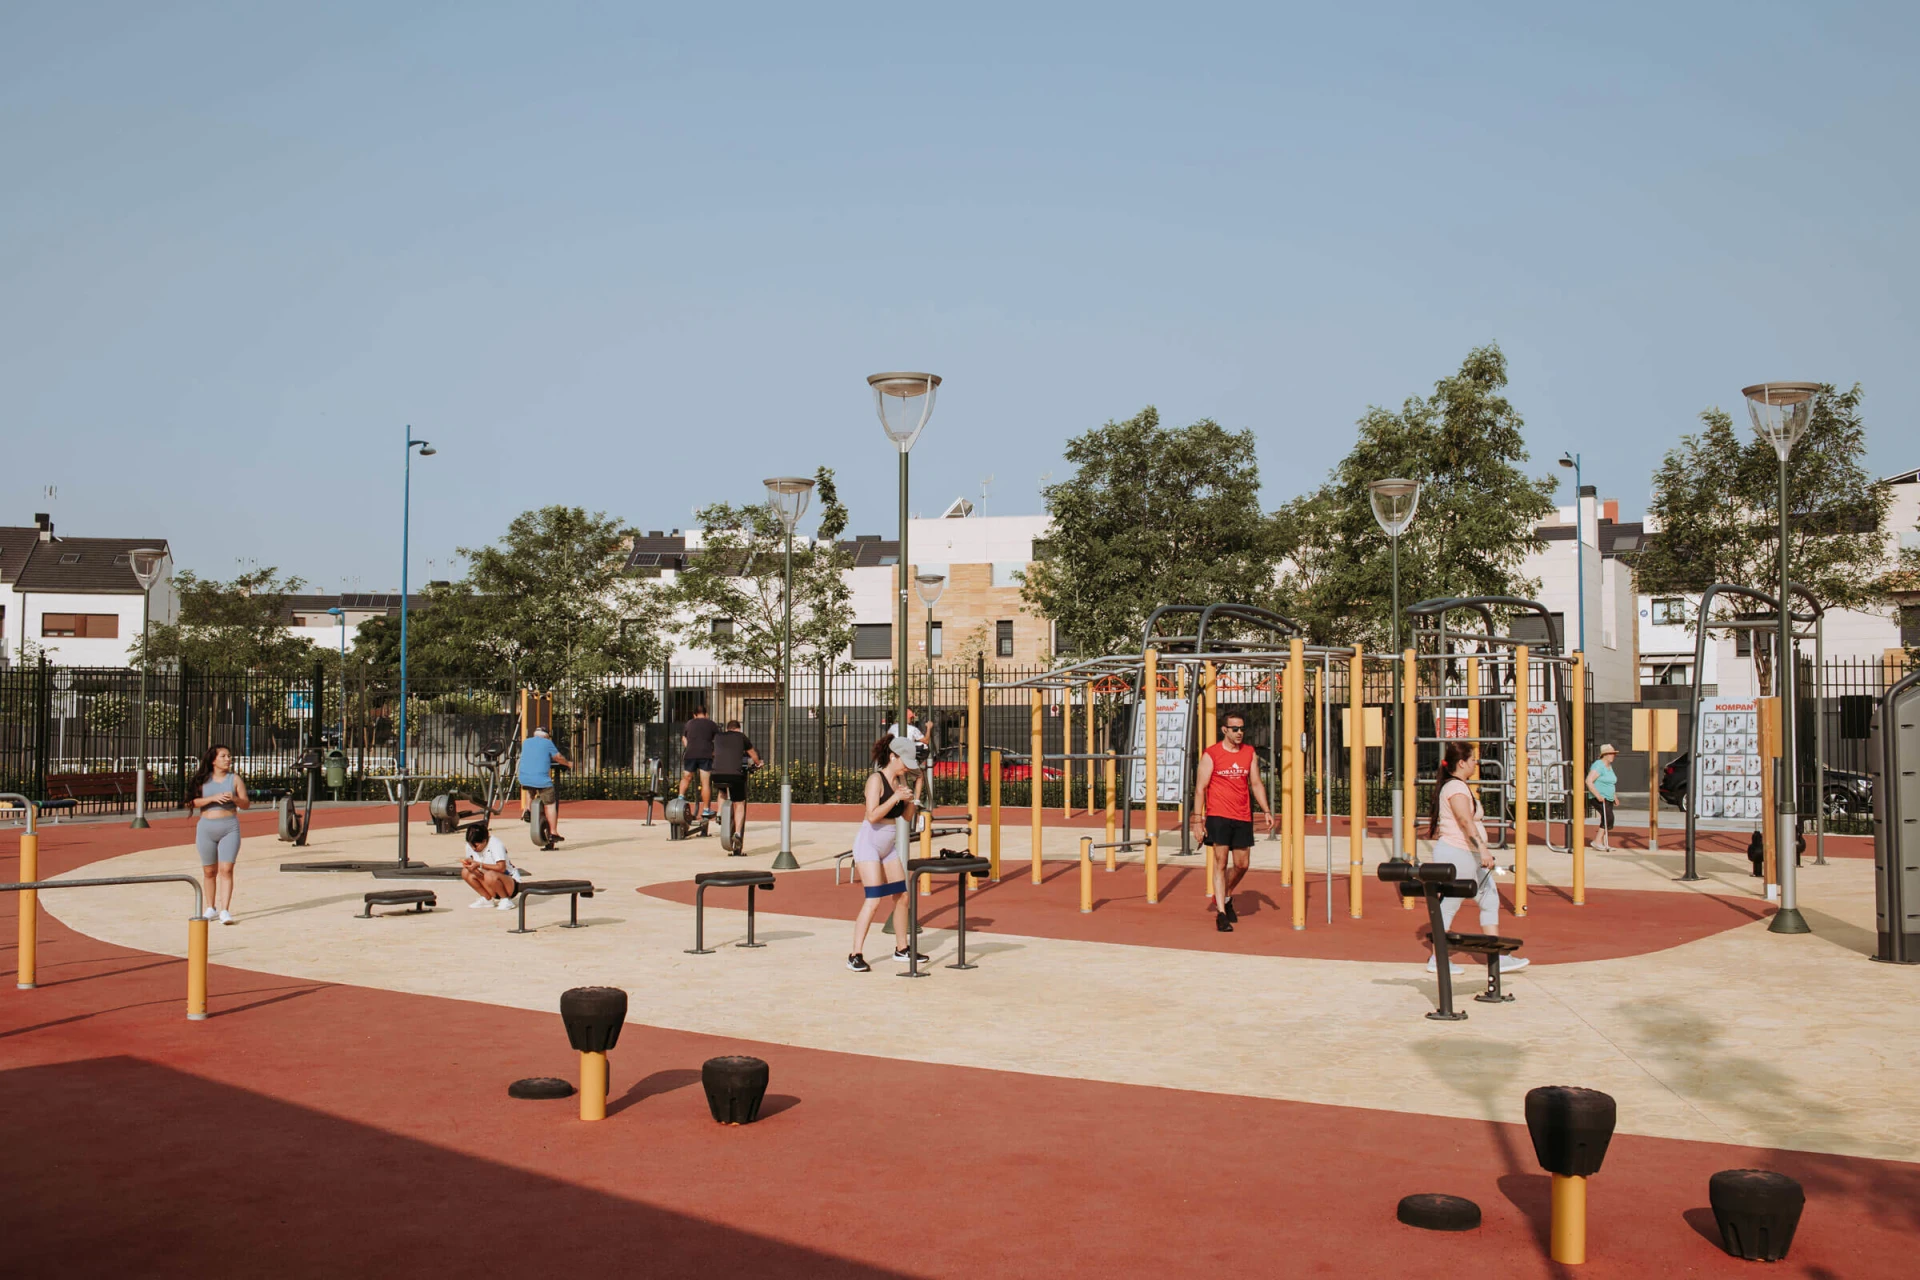 Zona de fitness al aire libre con calistenia y pista de obstáculos